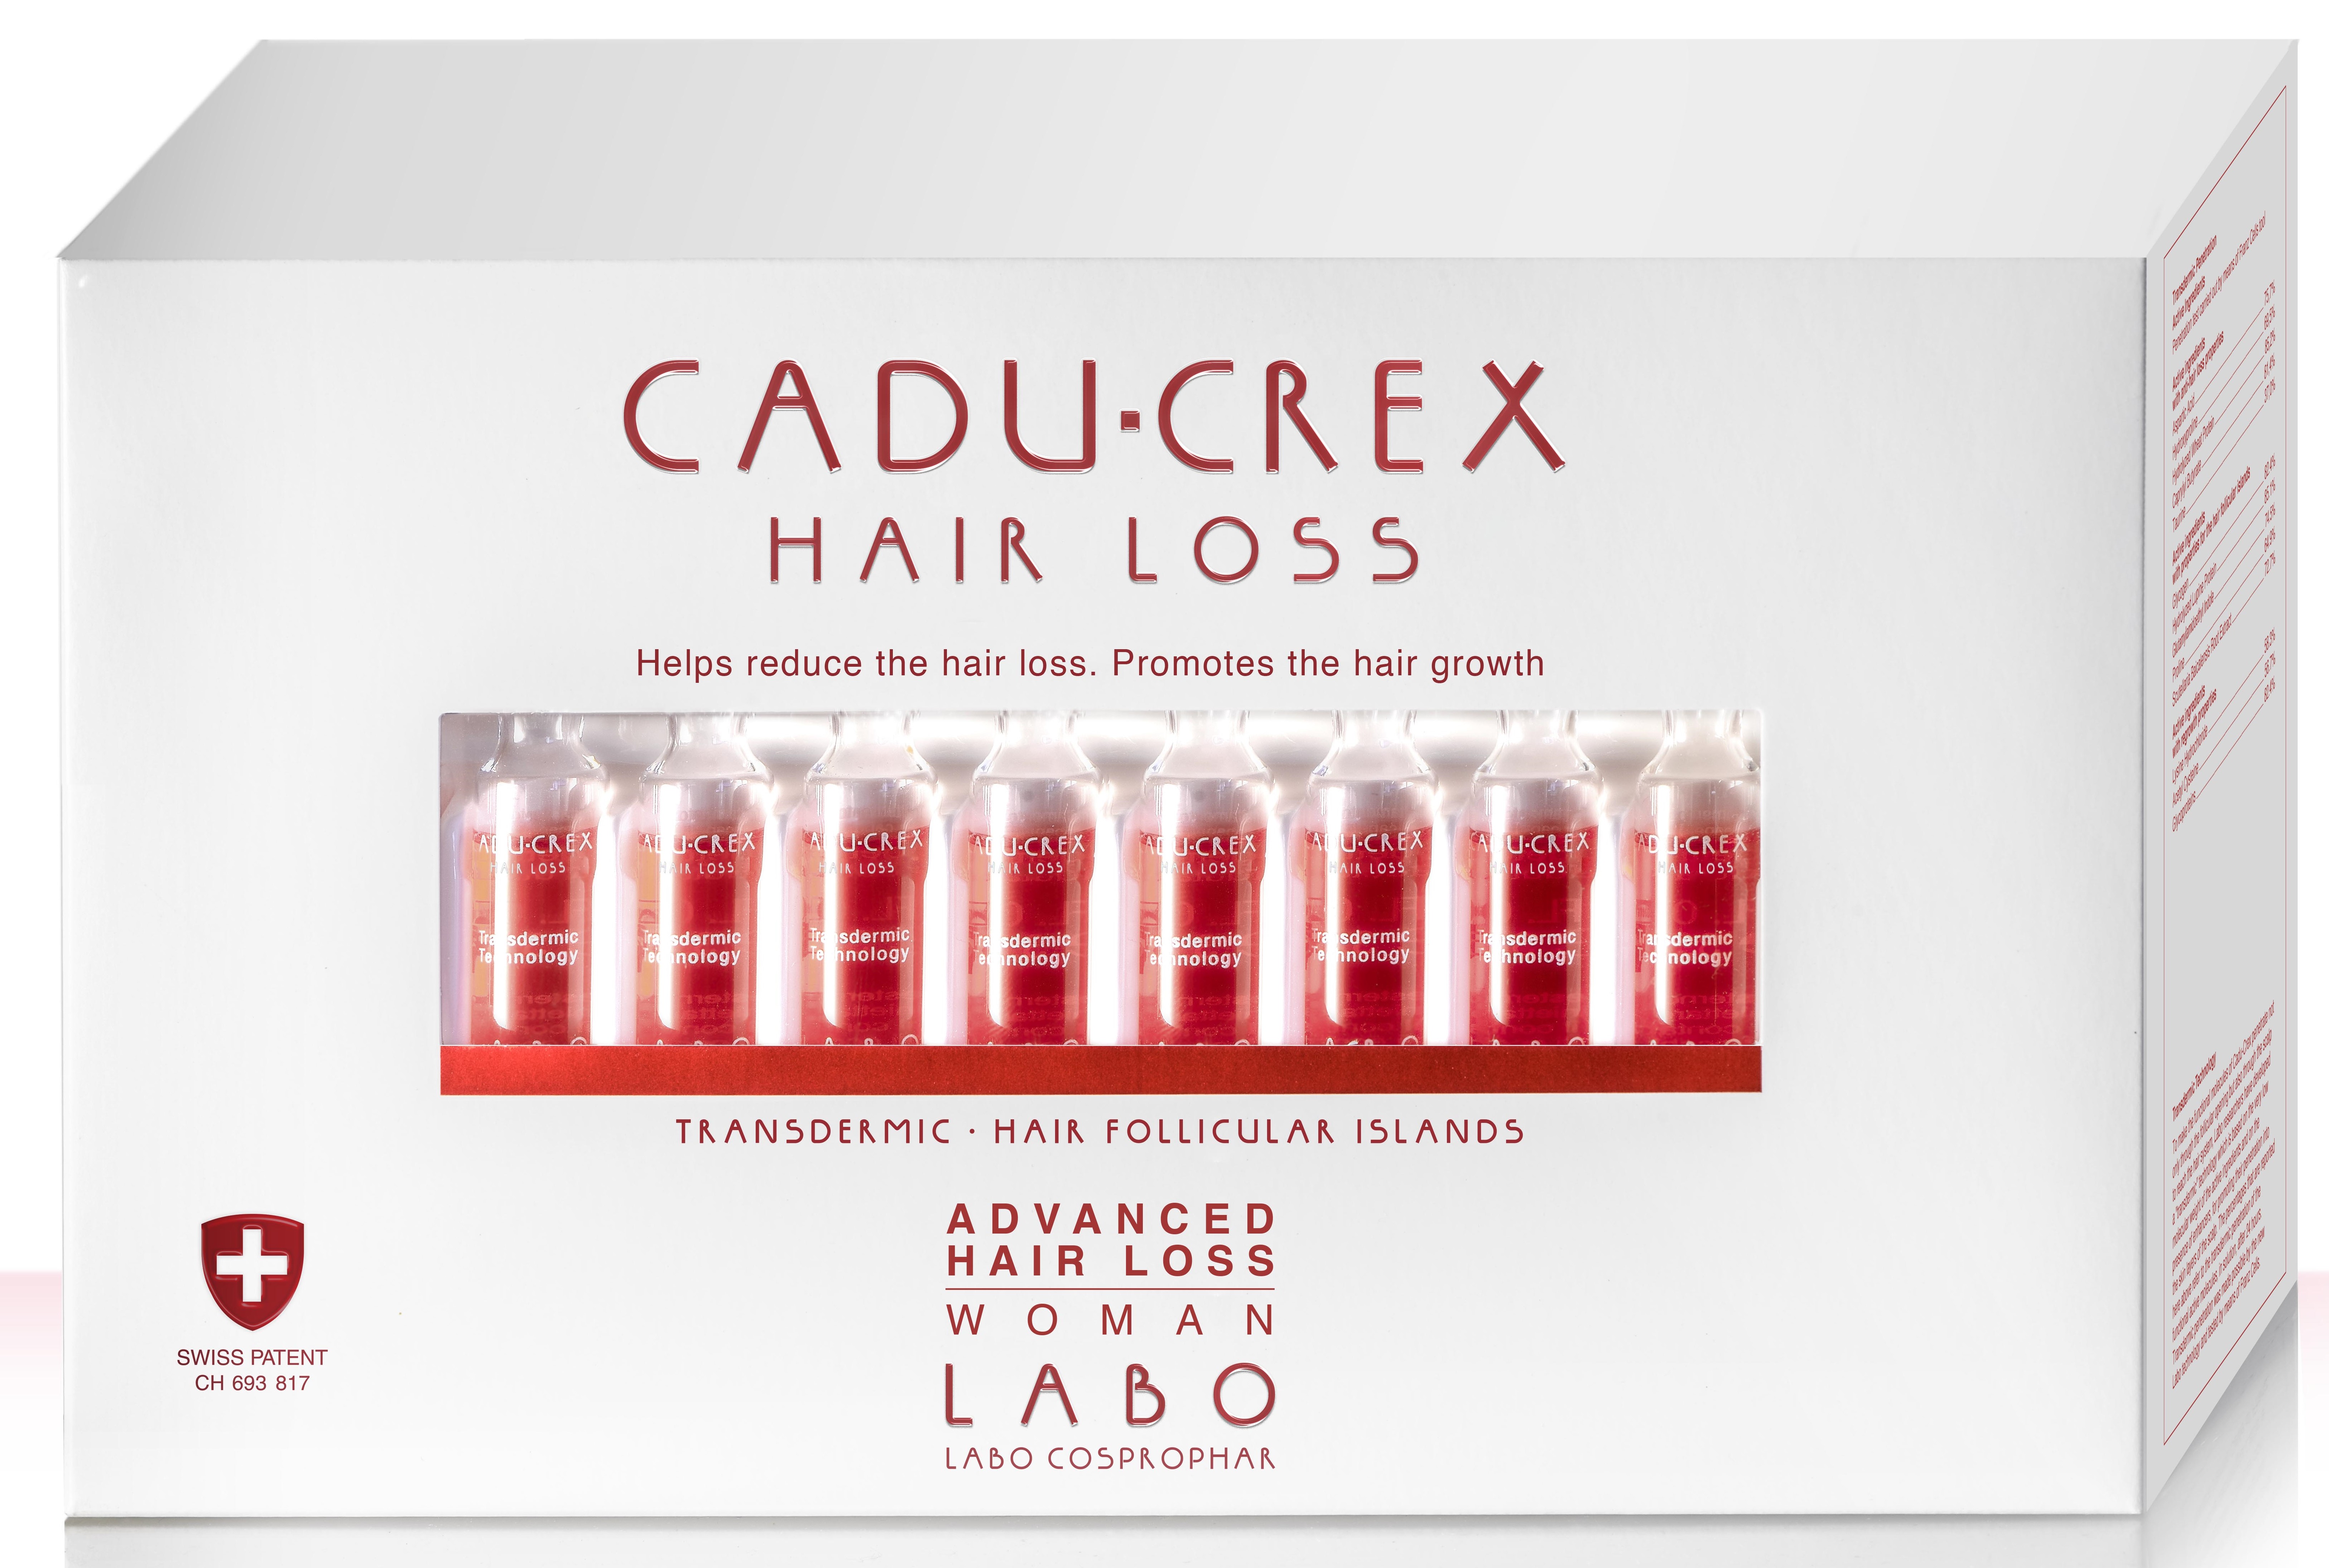 цена Crescina Лосьон при средней стадии выпадения волос у женщин Advanced Hair Loss, №40 (Crescina, Cadu-Crex)